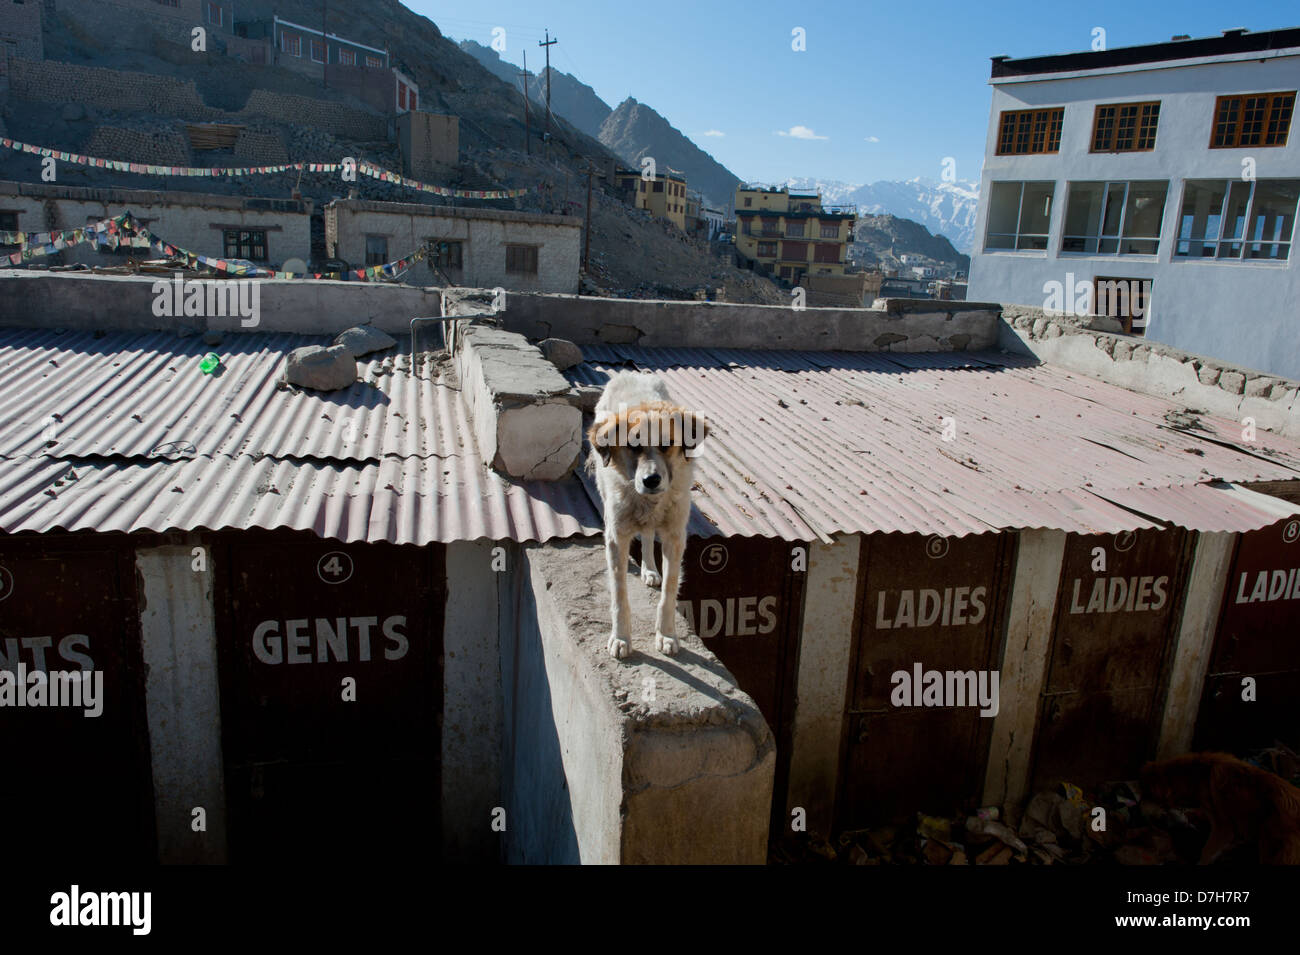 Un chien errant près de toilettes publiques dans la ville de montagne de Leh, Inde. Banque D'Images